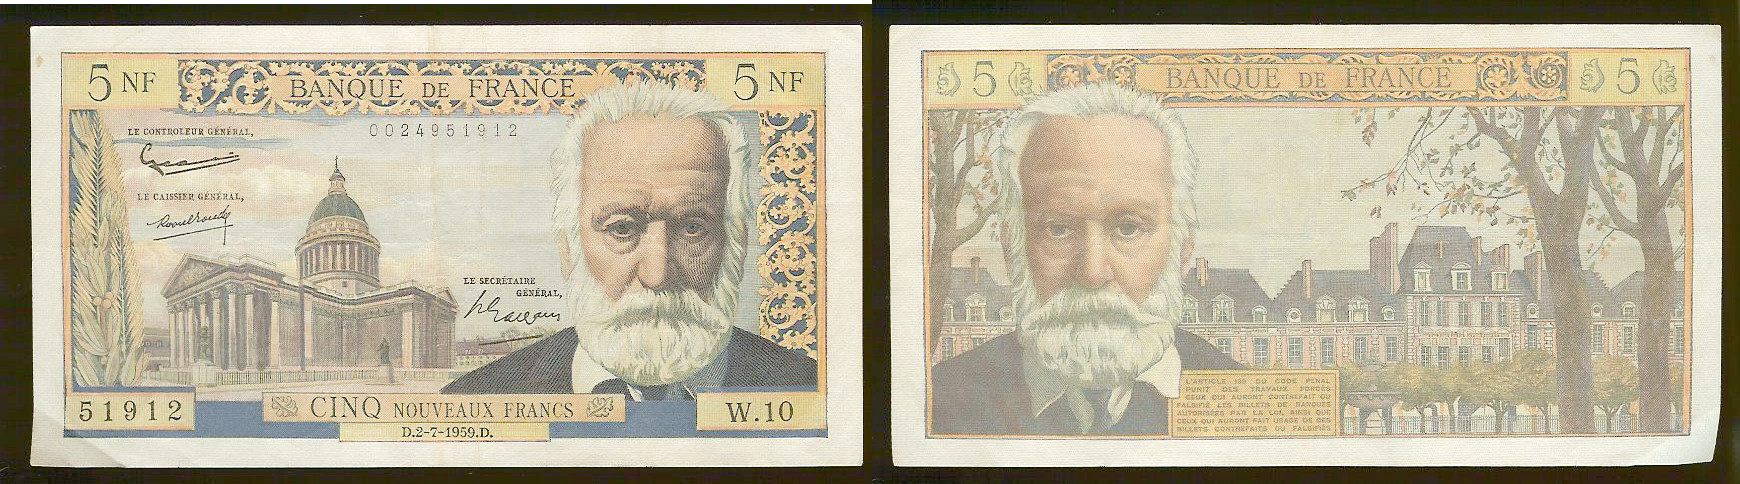 5 new francs Victor Hugo 2.7.59 gVF